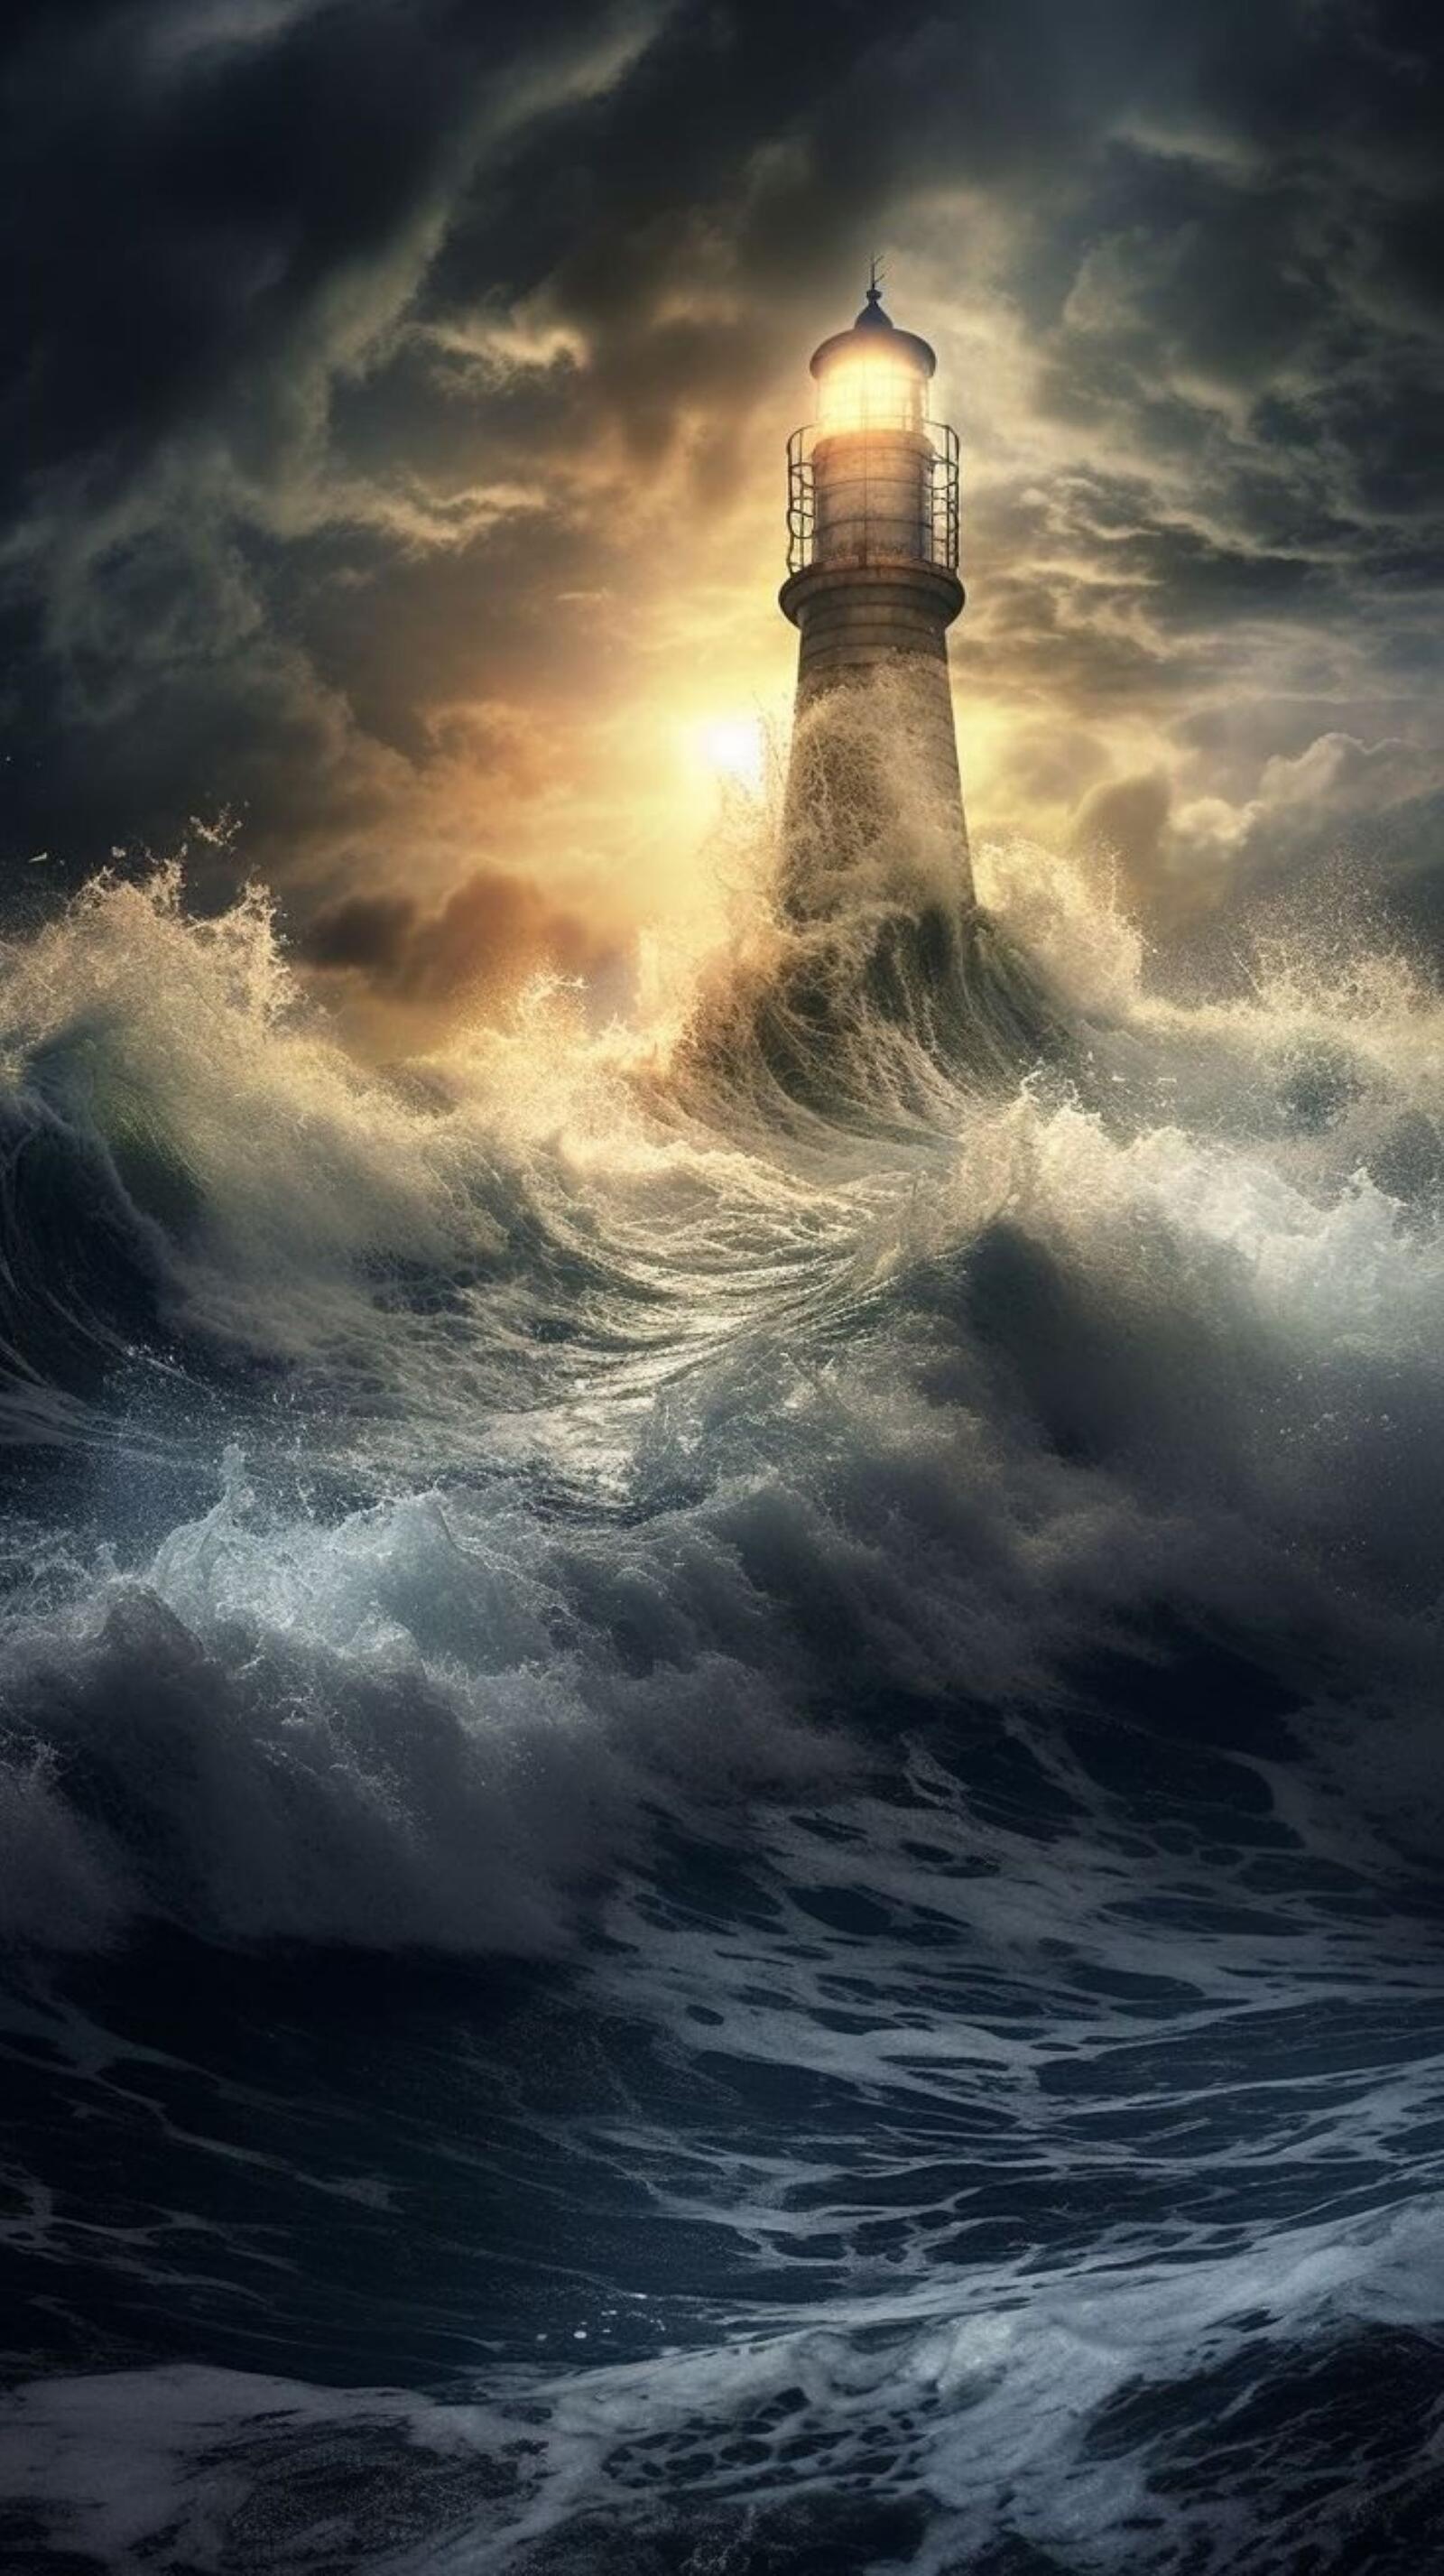 Бесплатное фото Маяк в бушующем океане